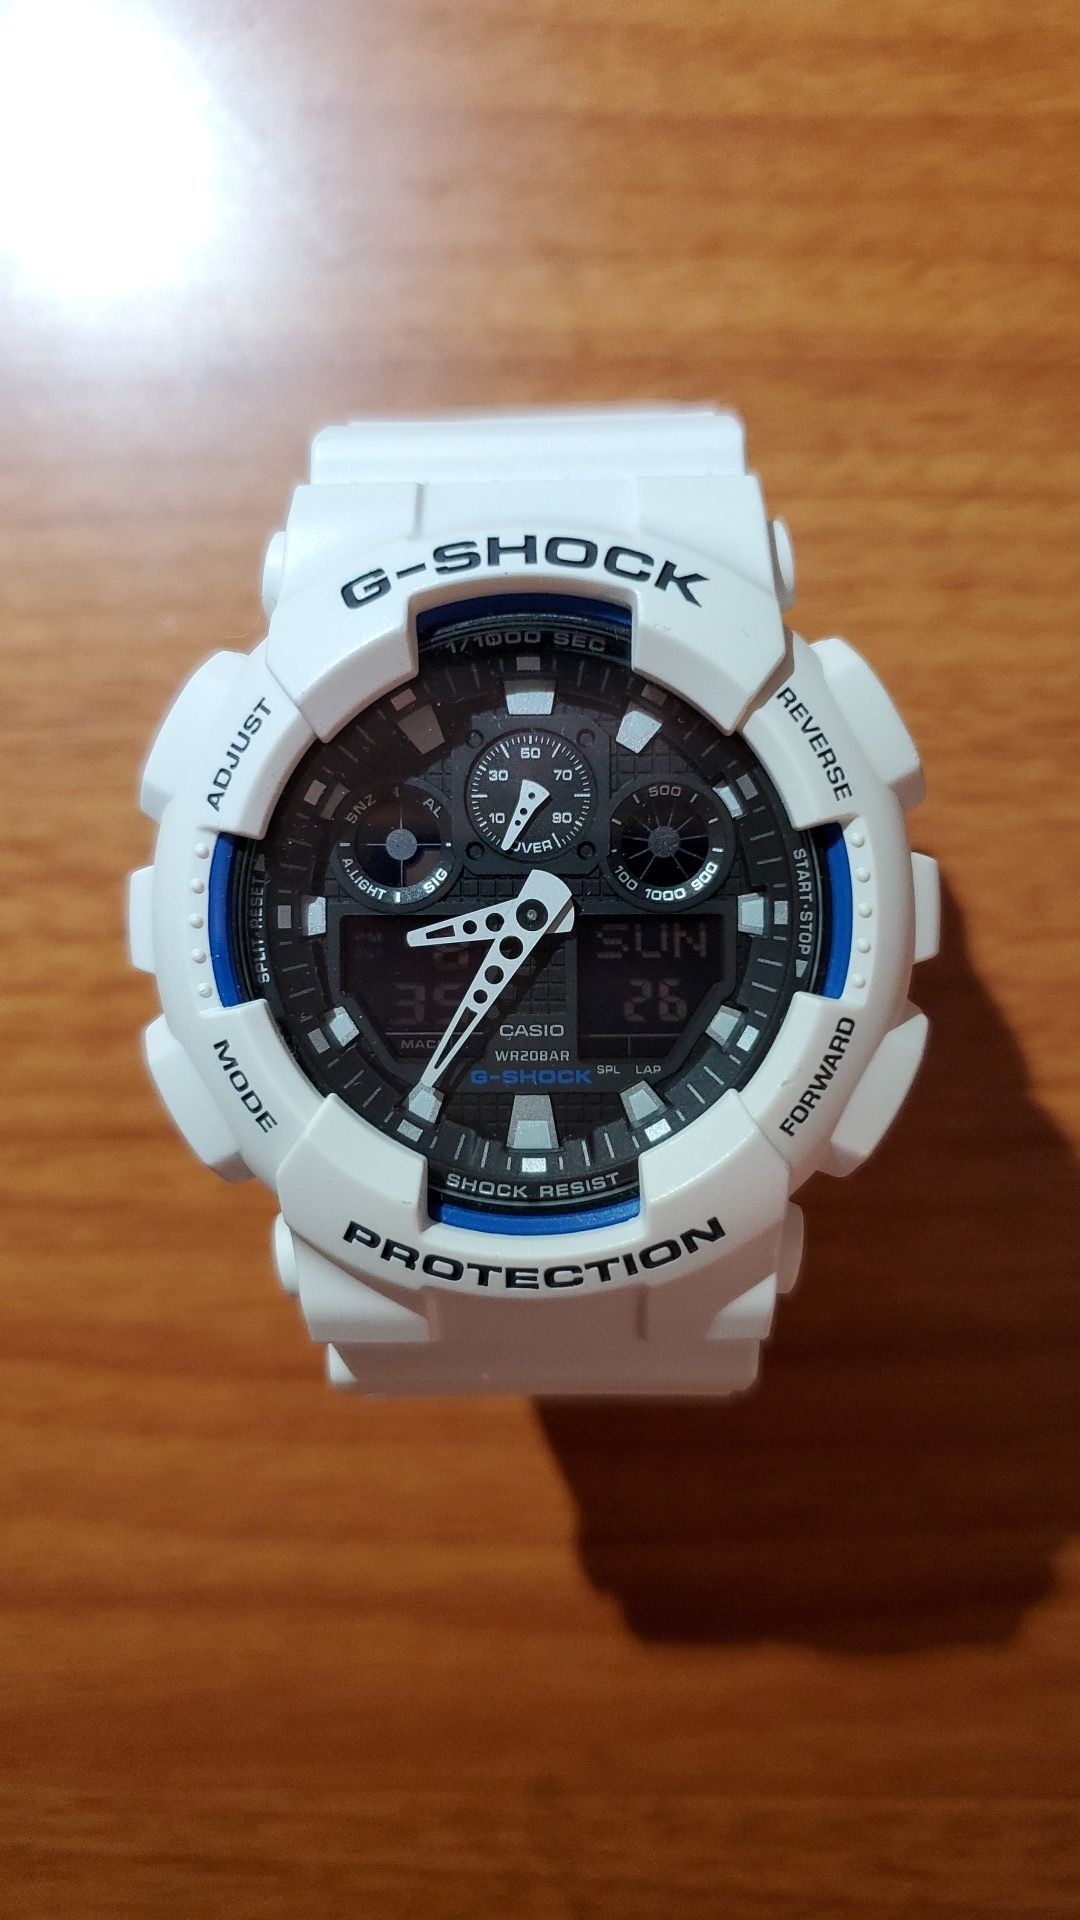 G-shock hand watch